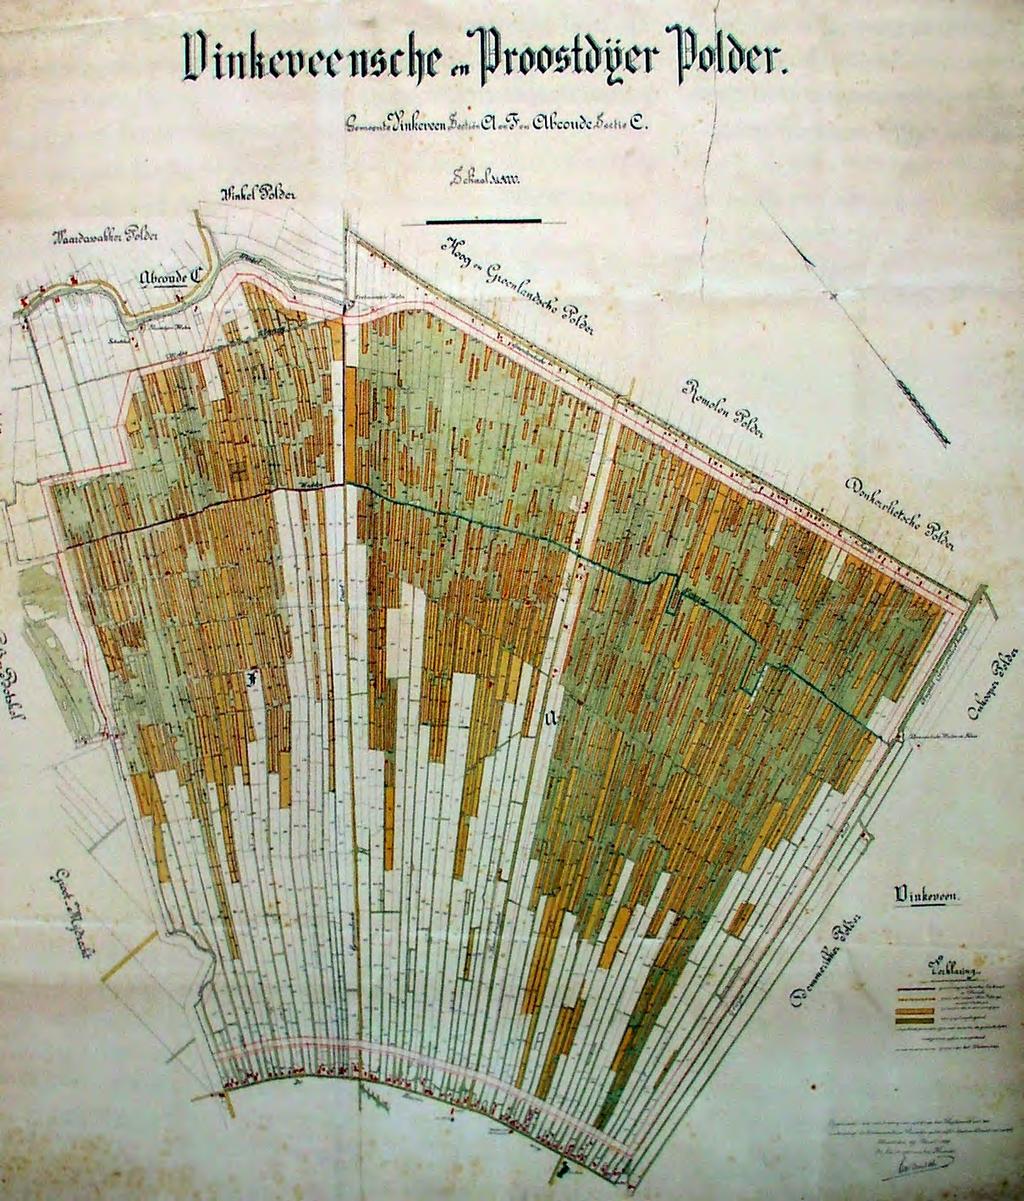 Gedetailleerde kaart uit 1889 met voortgang van de vervening van het onderzoeksgebied (het noorden is linksboven).